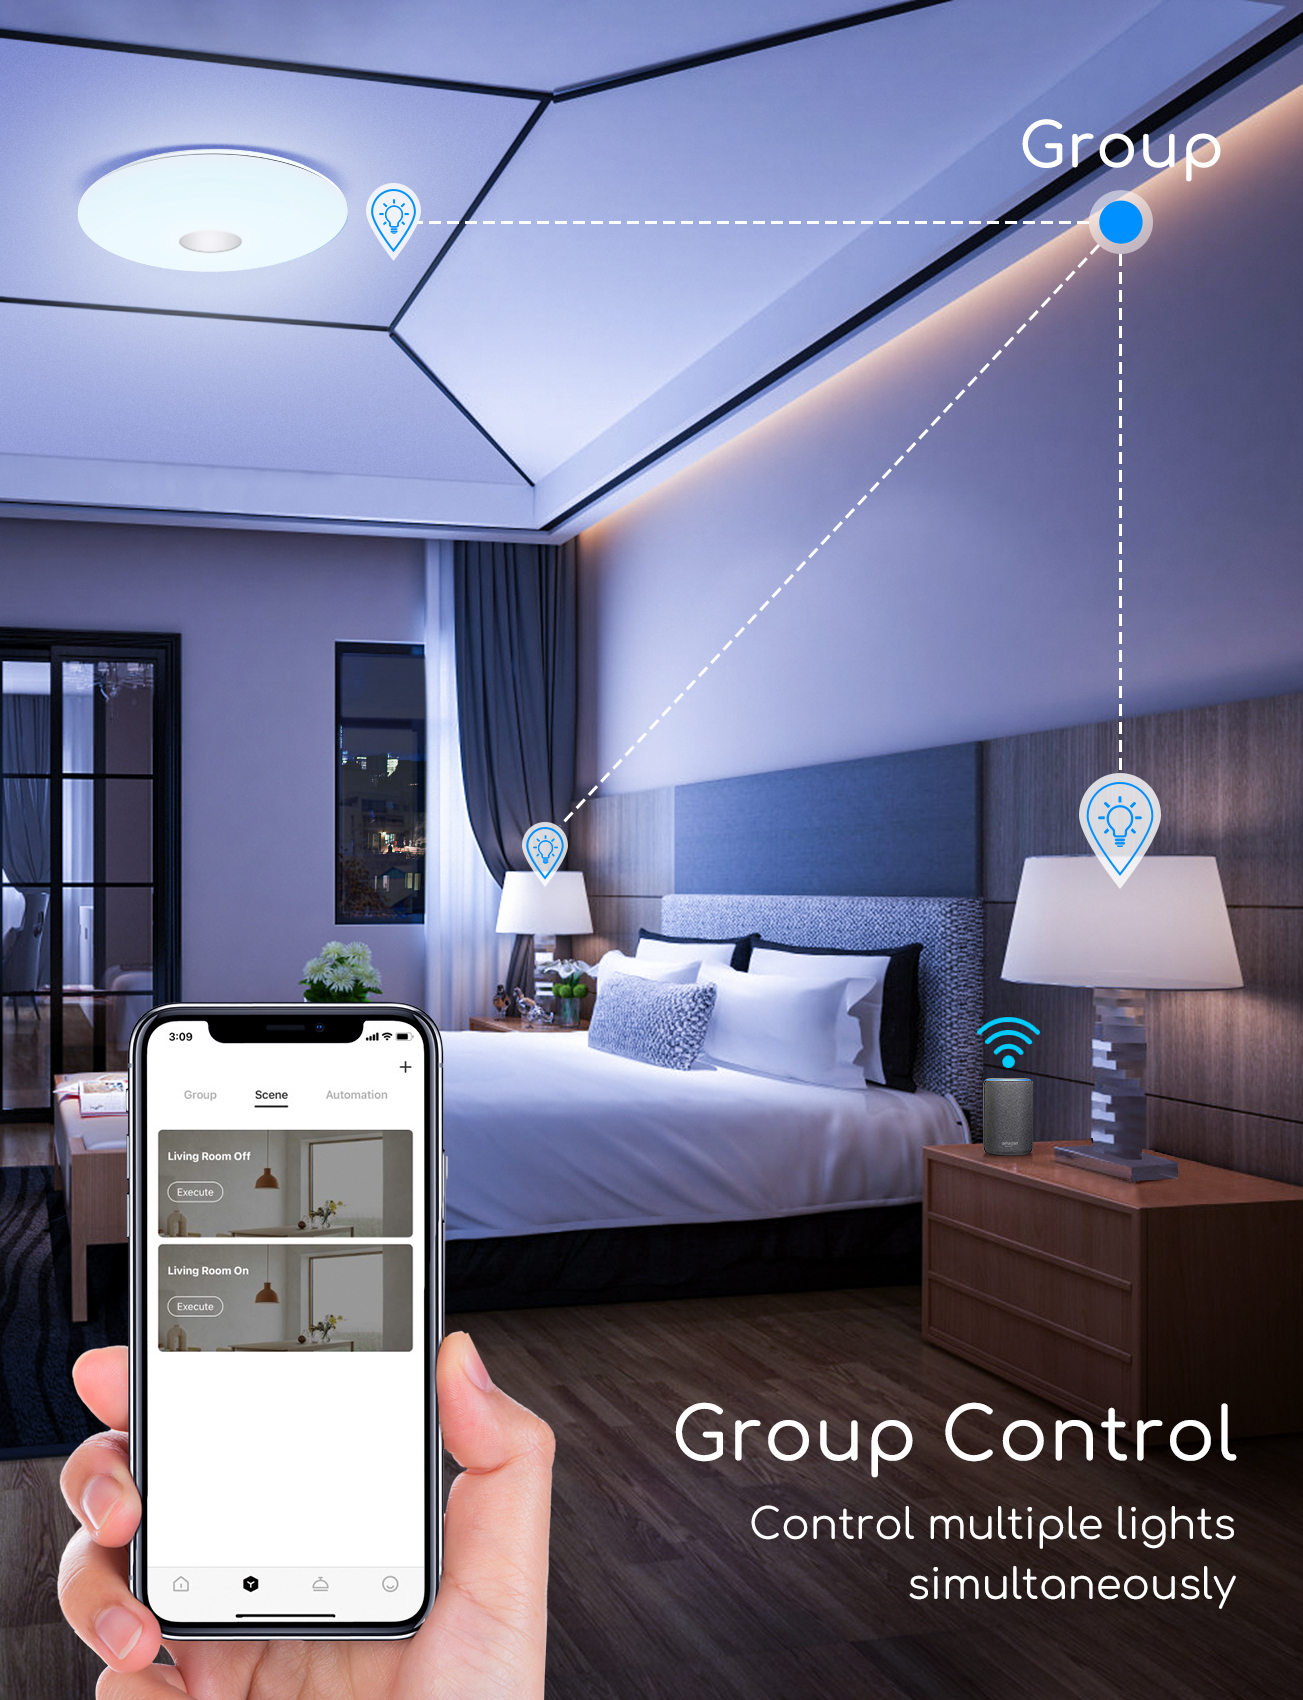 Aigostar LED Deckenleuchte Dimmbar 18W, RGB Farbwechsel, App- oder Sprachsteuerung, kompatibel mit Alexa und Google Home, 1300lm, 3000K-6500K（Gleichwertige Glühlampe 75W)